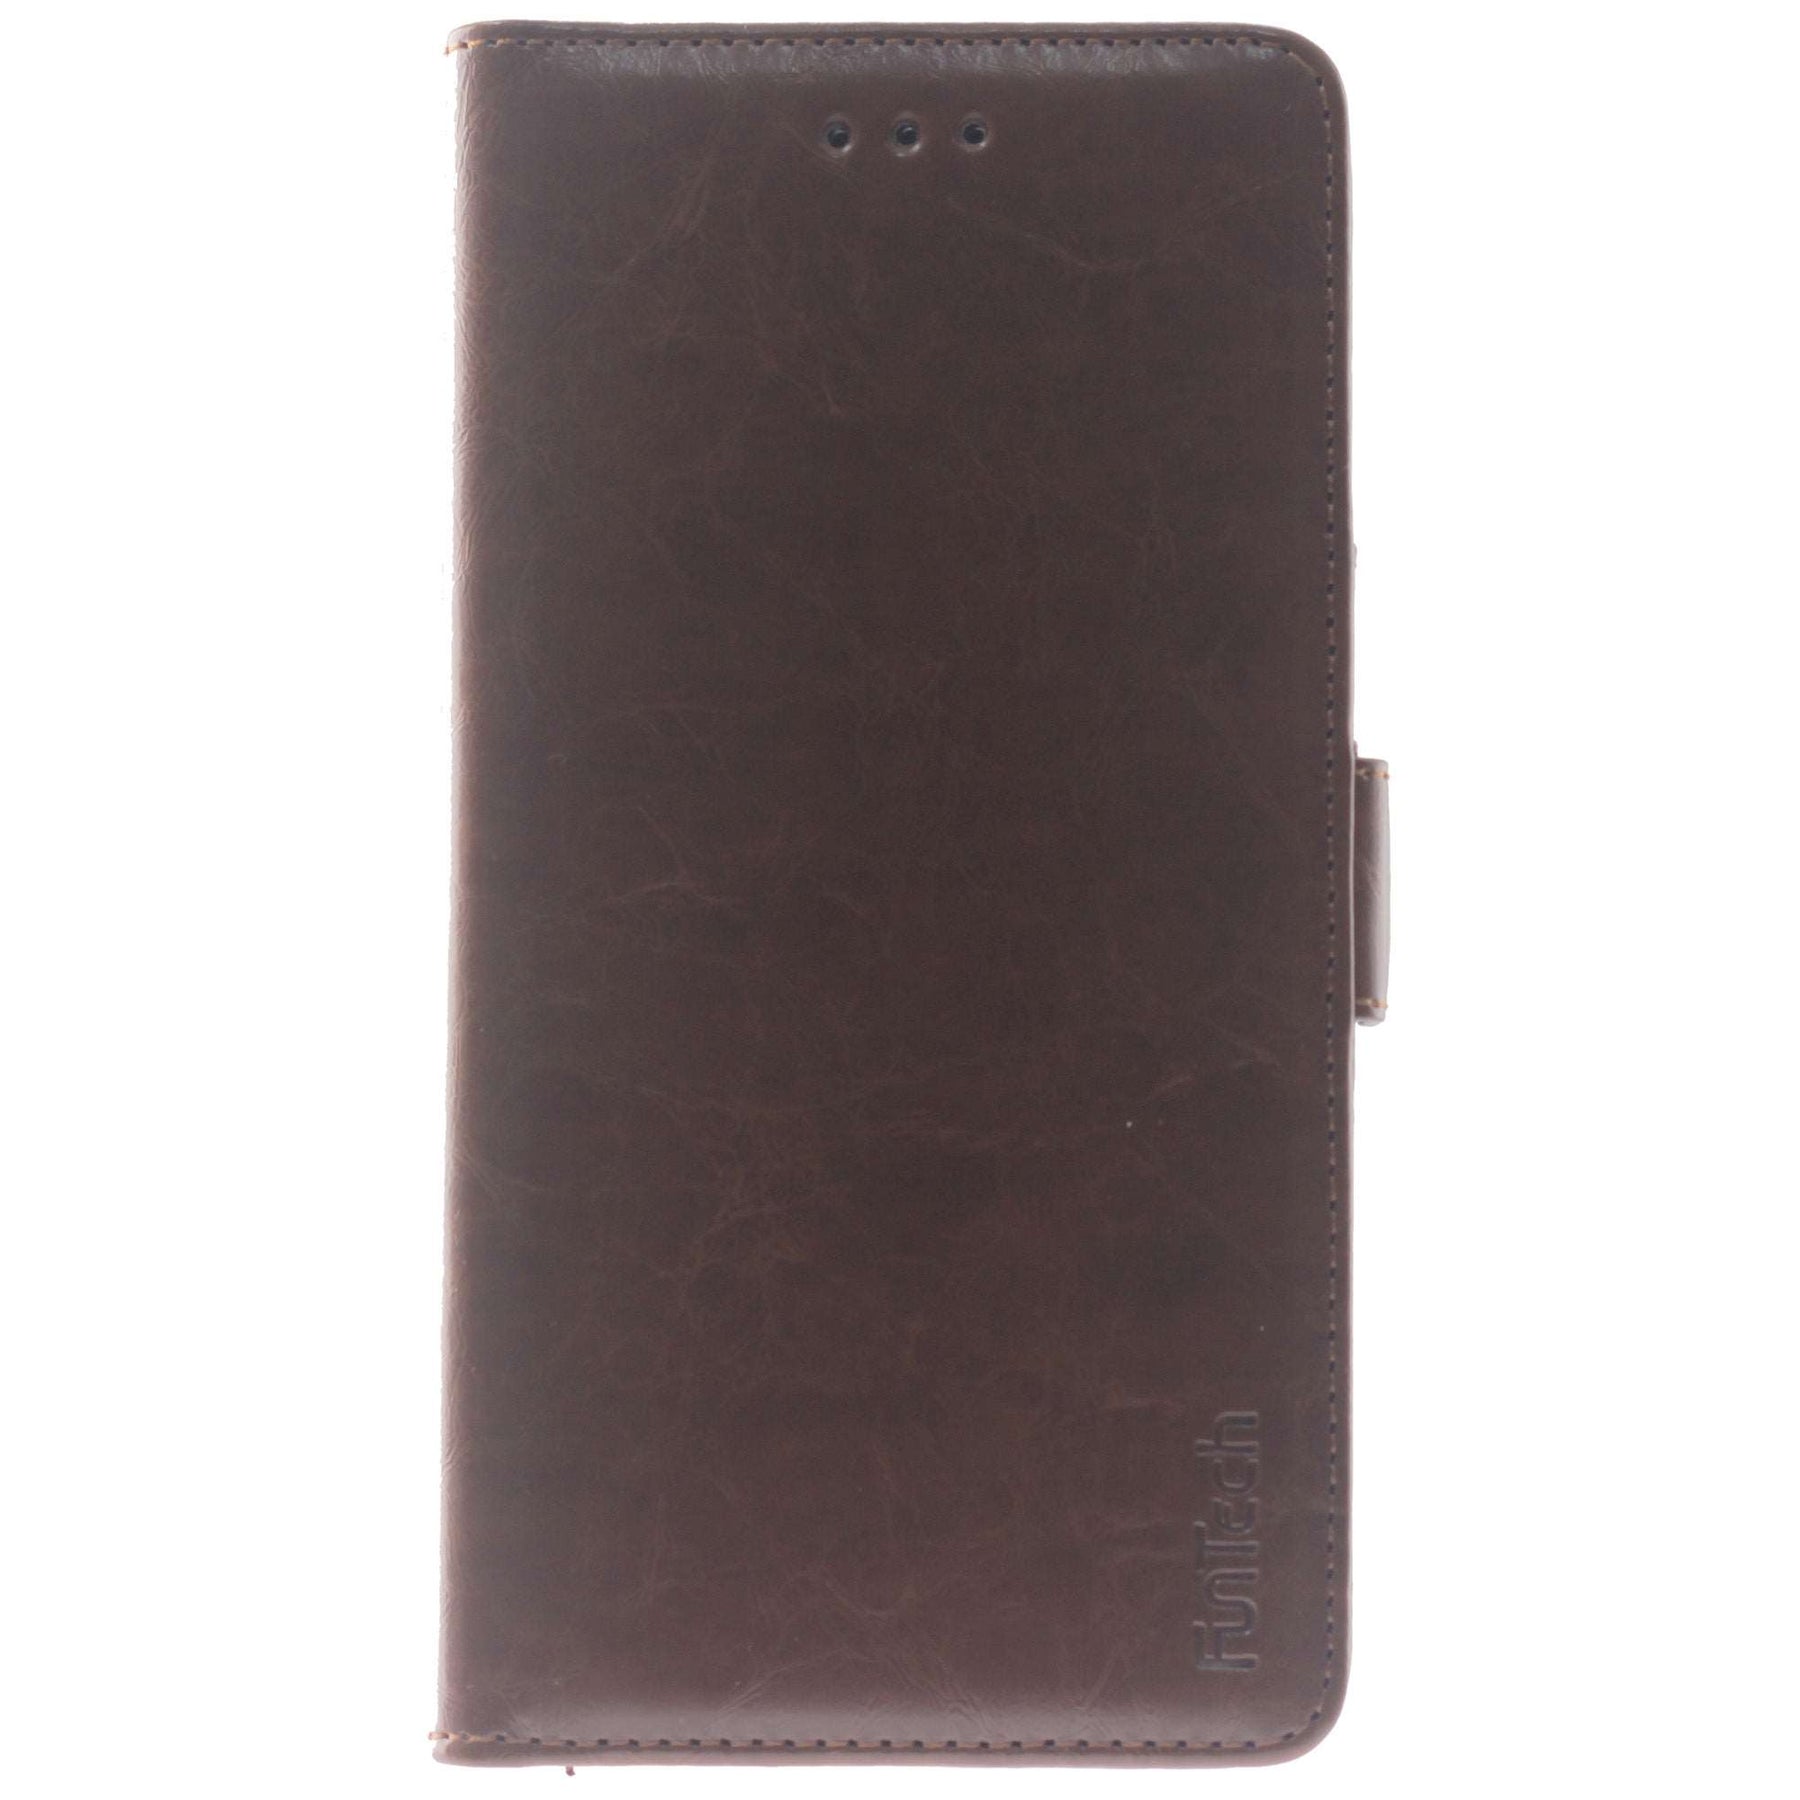 Samsung J8 2018 brown wallet case.